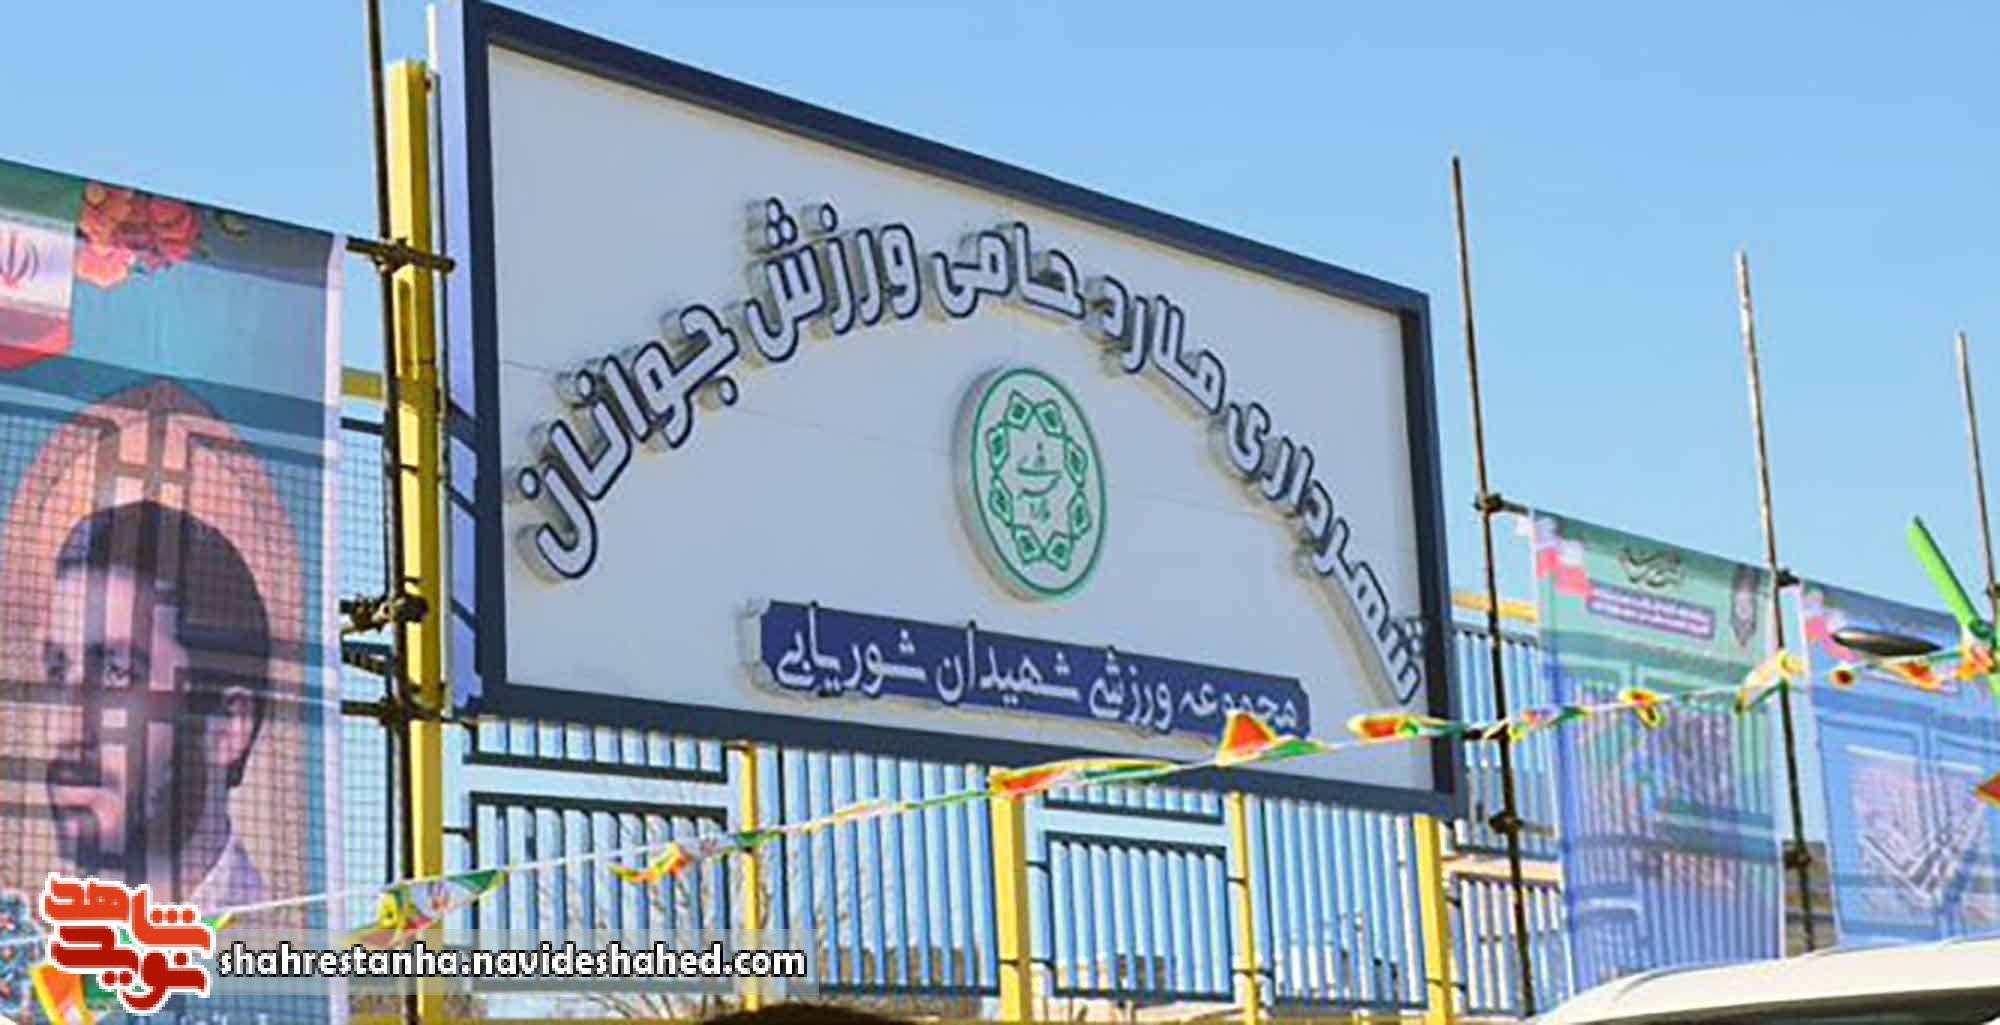 مجموعه ورزشی شهرستان ملارد به نام شهیدان «شوریابی» نامگذاری شد